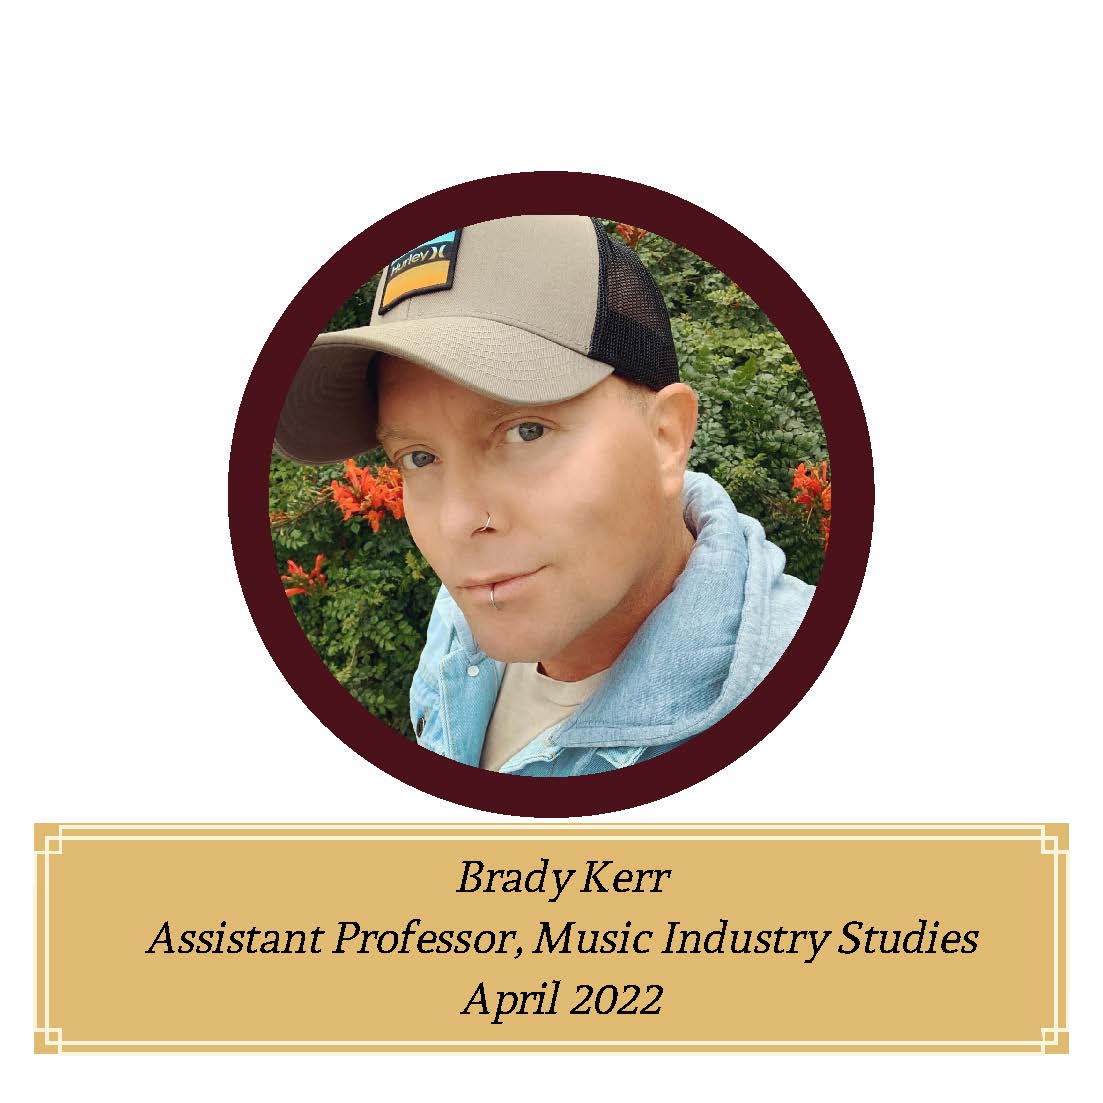 Brady Kerr